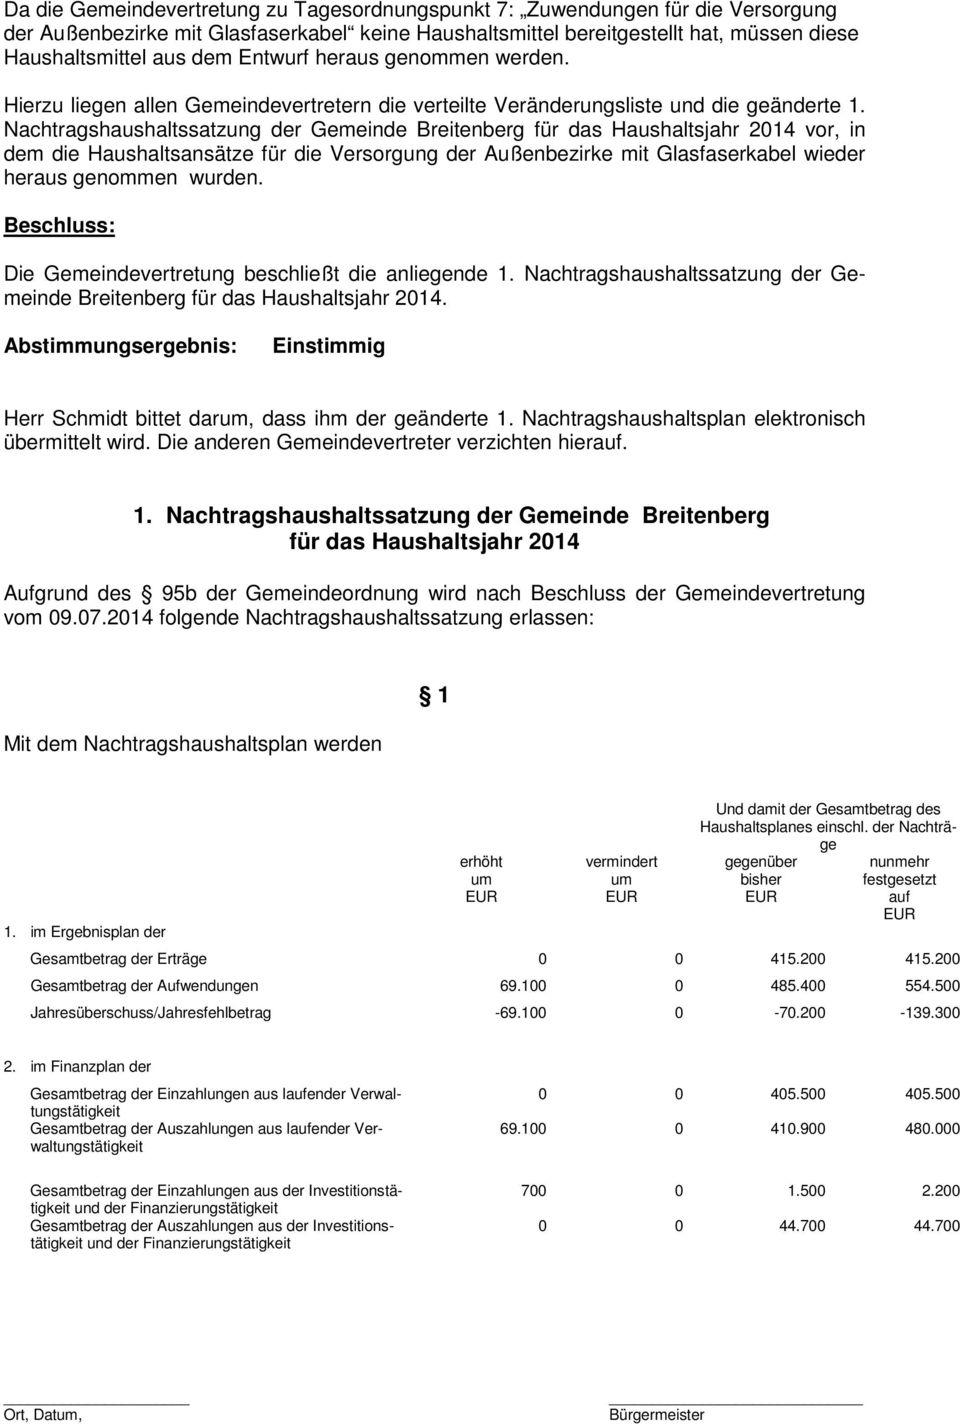 Nachtragshaushaltssatzung der Gemeinde Breitenberg für das Haushaltsjahr 2014 vor, in dem die Haushaltsansätze für die Versorgung der Außenbezirke mit Glasfaserkabel wieder heraus genommen wurden.